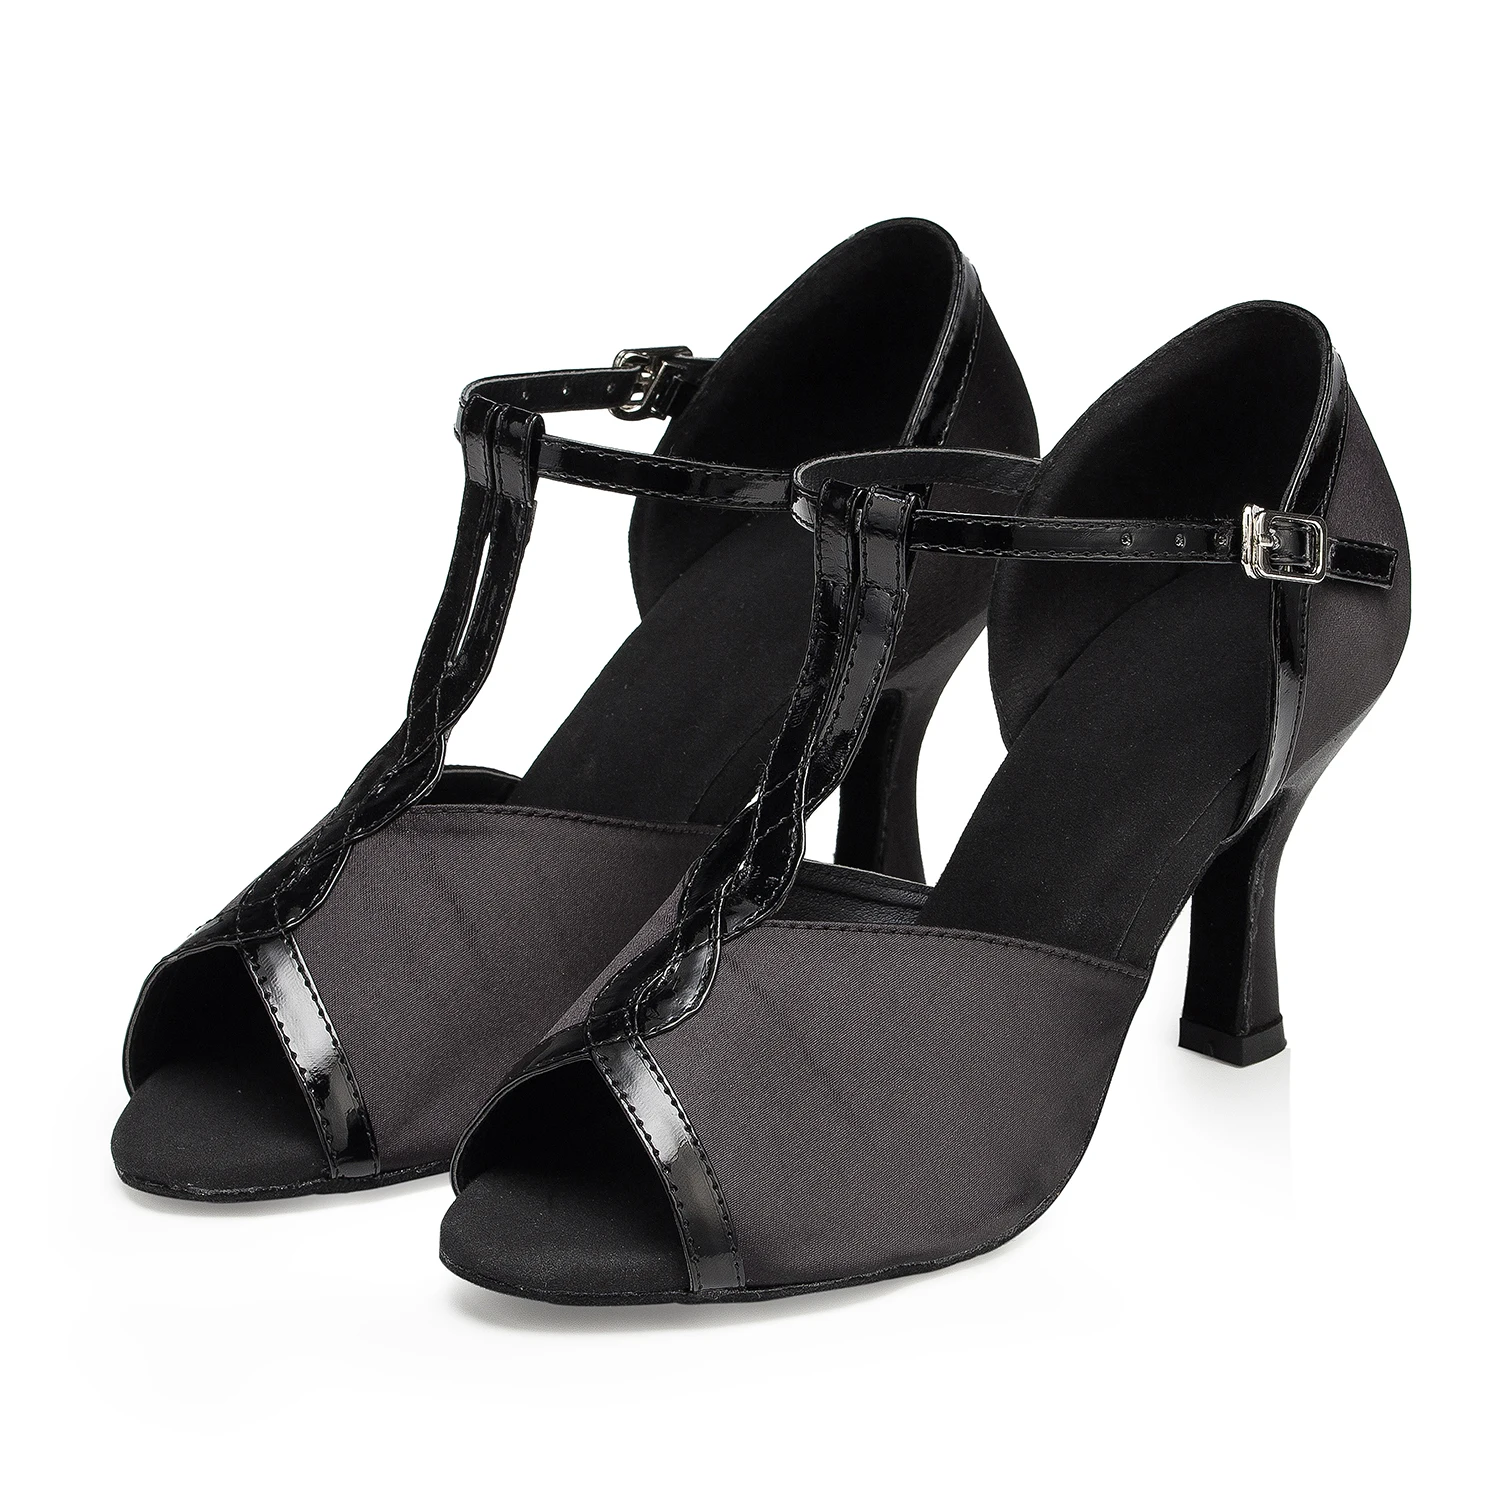 Dropshipping Classic Black Customized Heel Professional Dance Shoes Salsa Tango Latin Ballroom Chacha Dancing For Girls Women